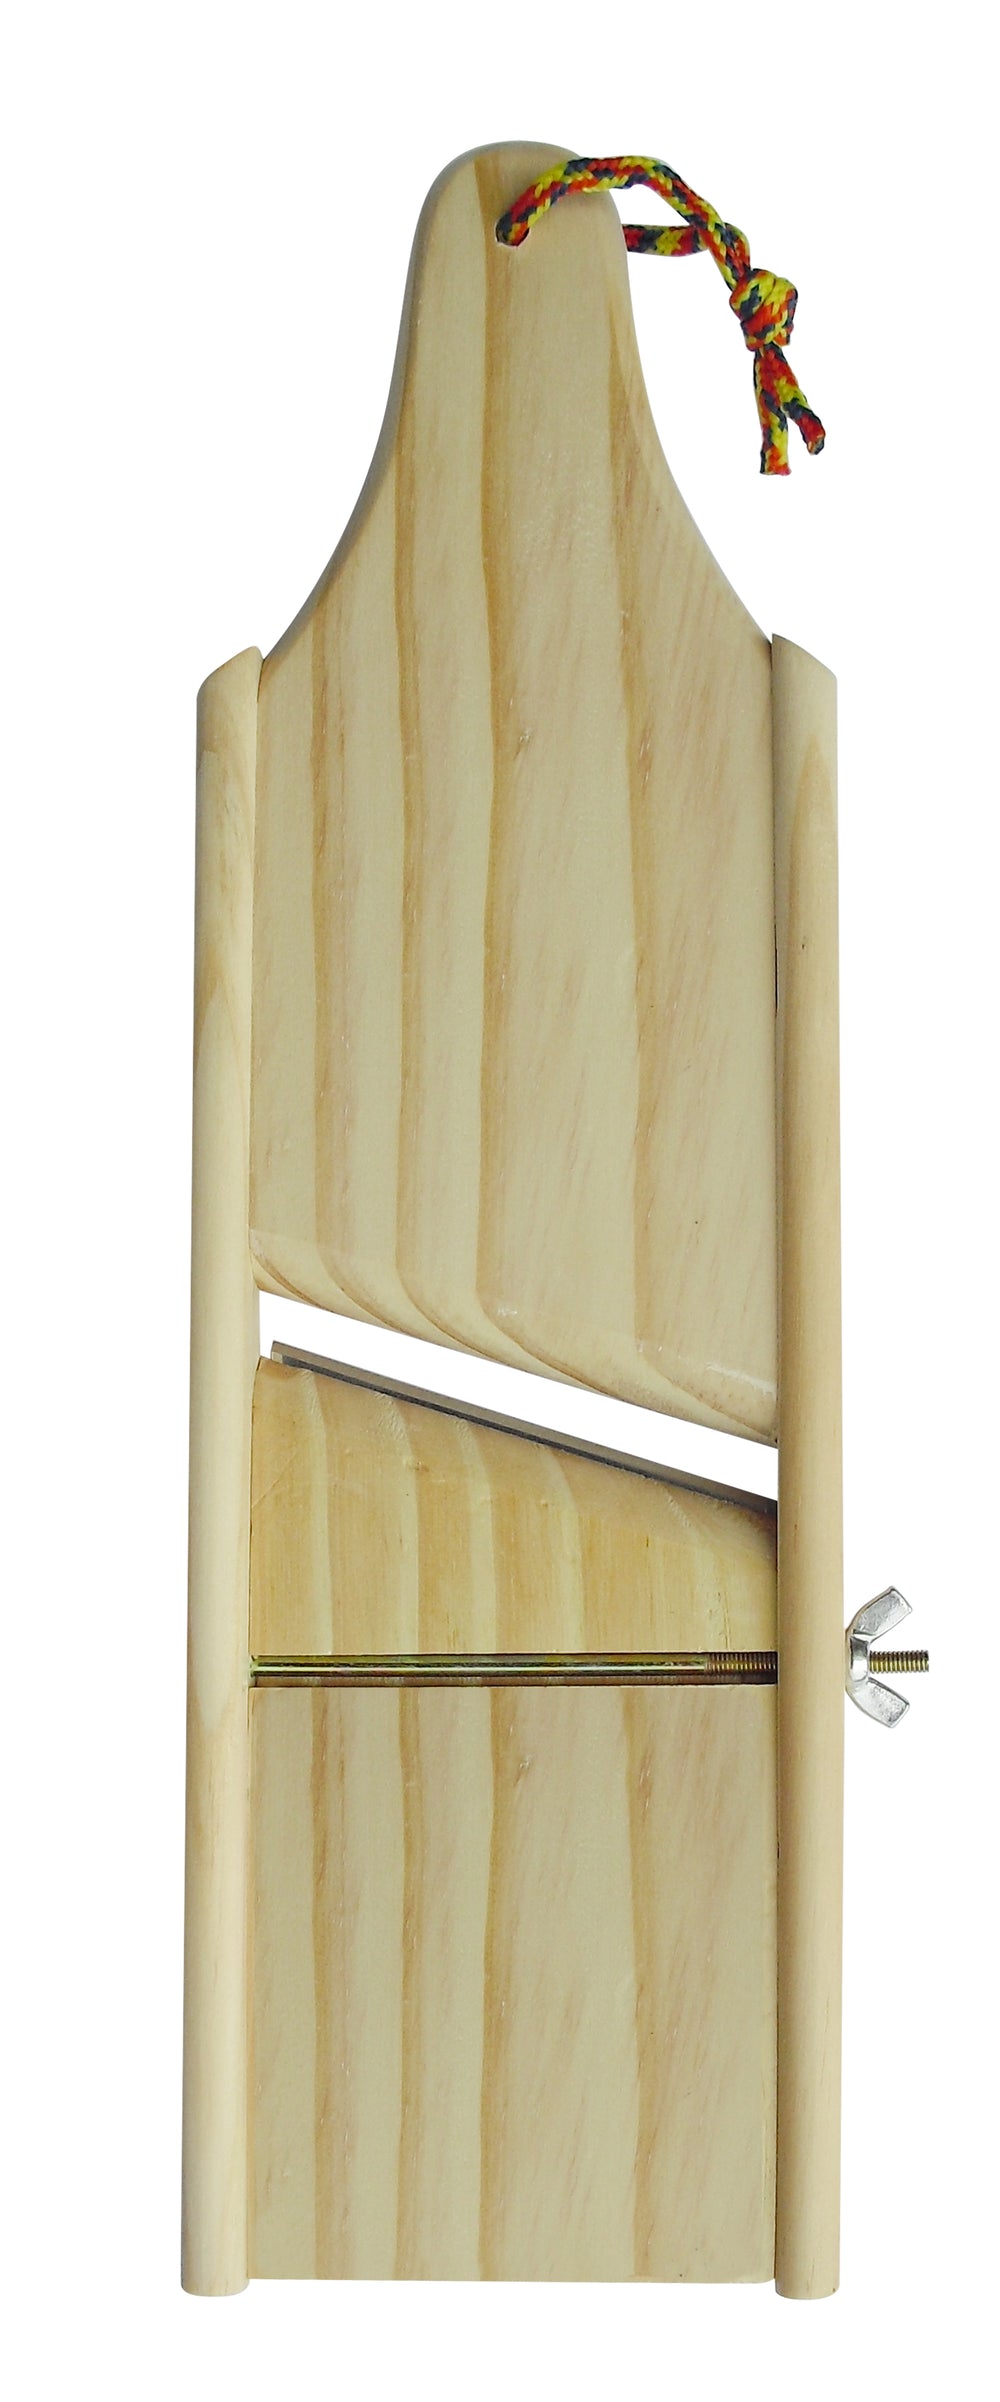 Bene Casa 14-inch wooden plantain slicer, adjustable blade, wooden man